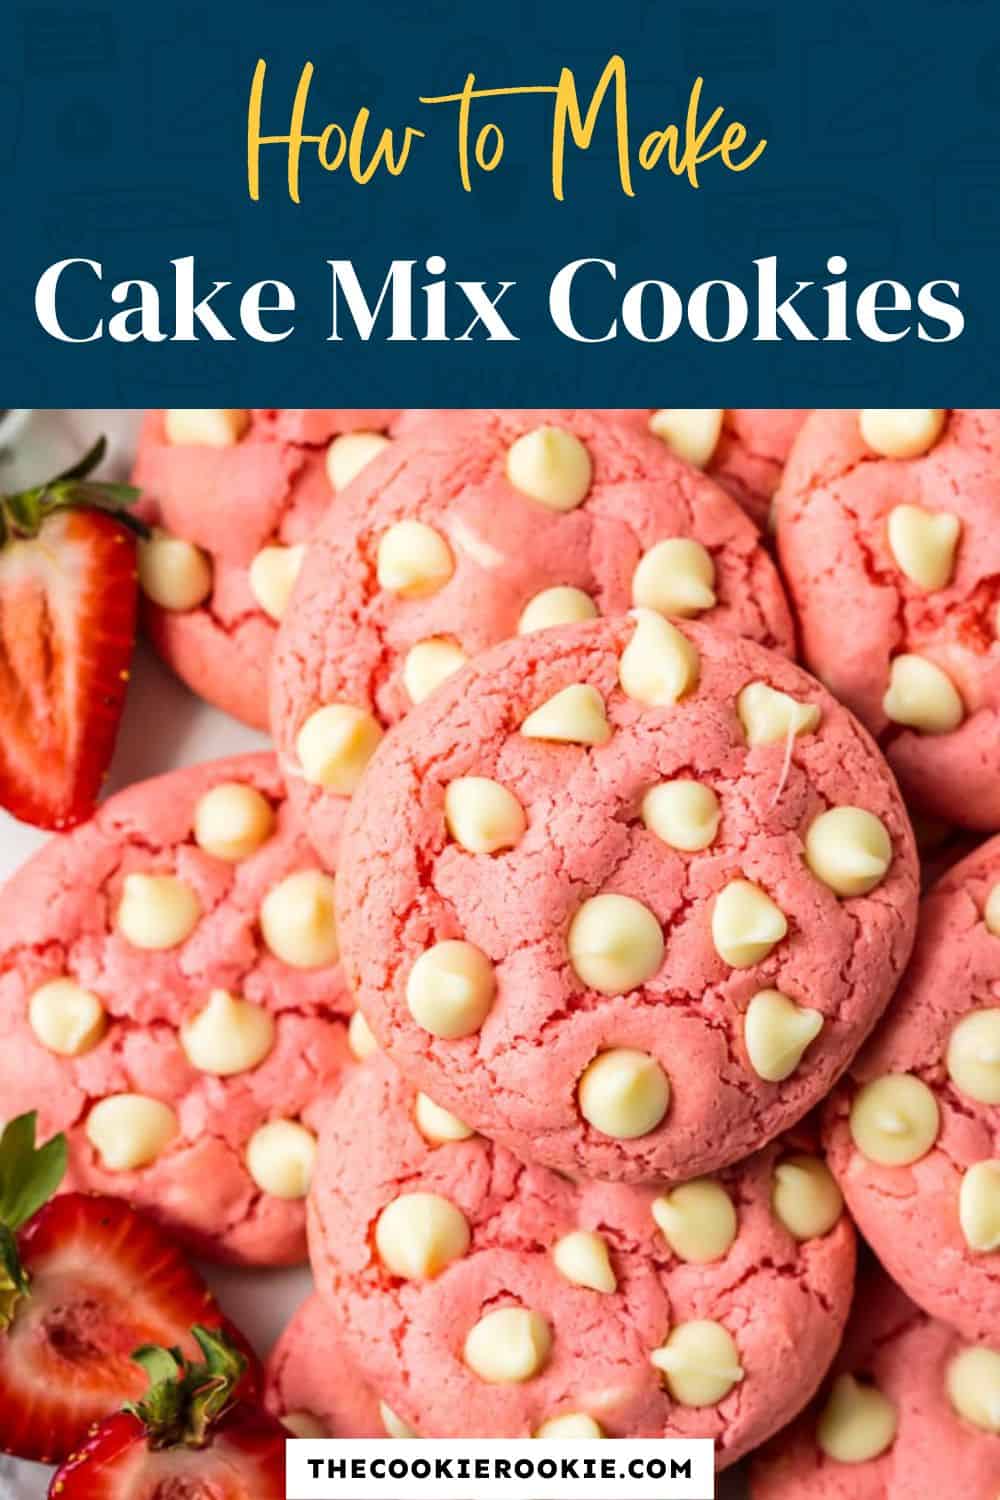 How to make cake mix cookies.